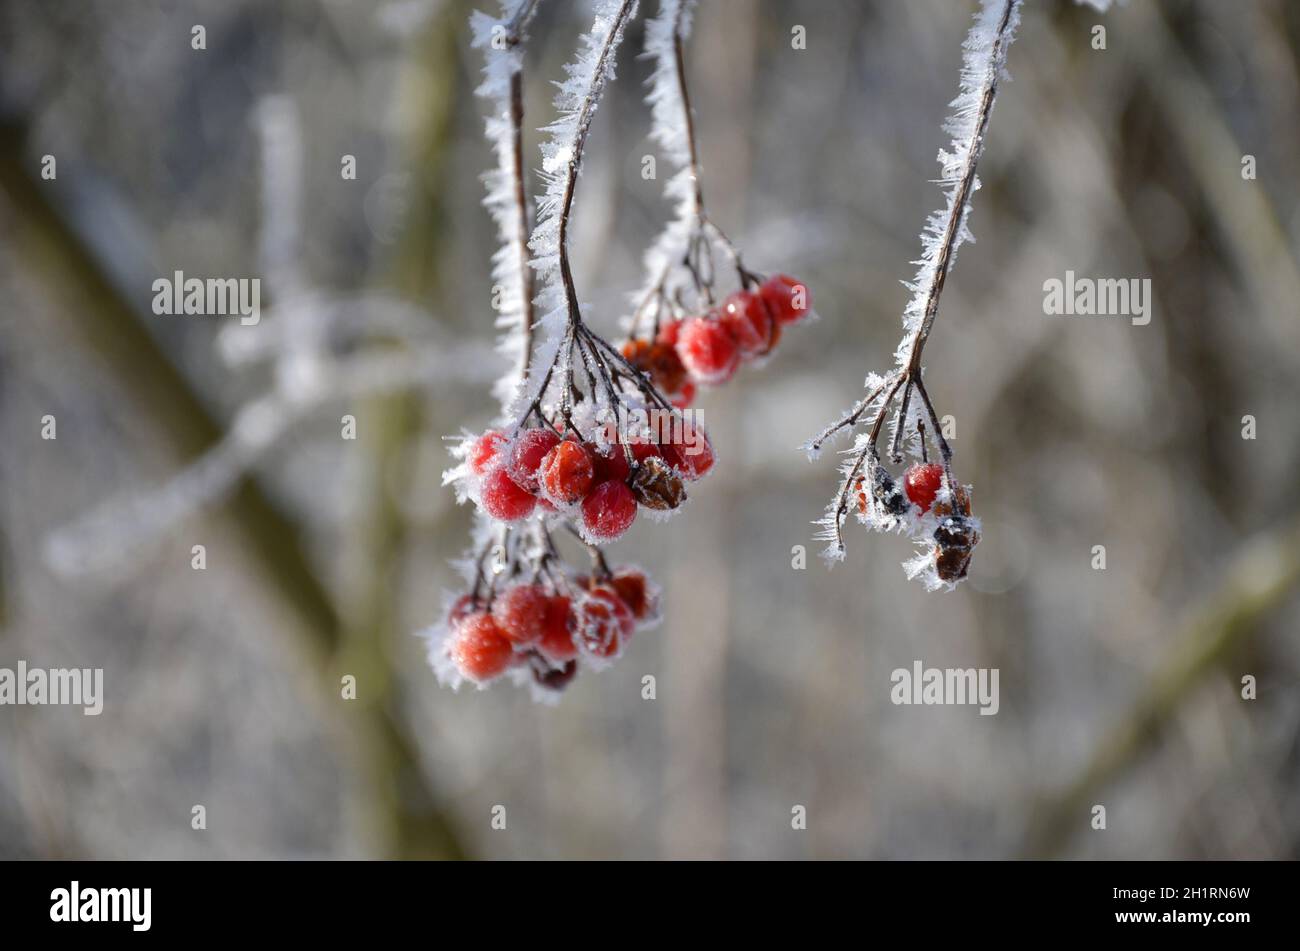 Früchte des Gemeinen Schneeballs mit Schneekristallen im Winter - Snowball fruits with snow crystals in winter Stock Photo